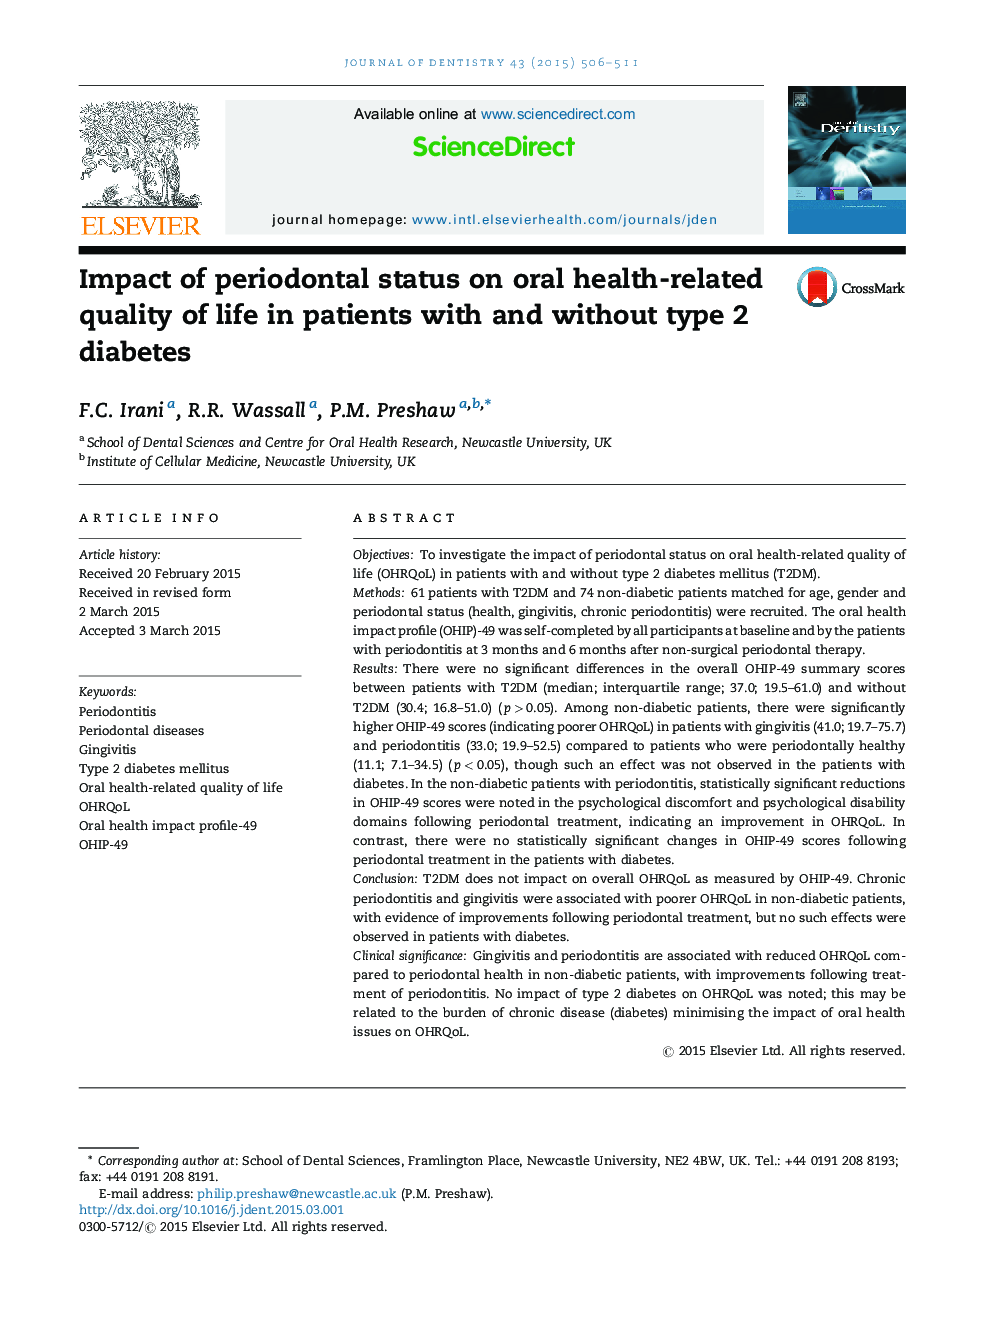 تأثیر وضعیت پریودنتال بر کیفیت زندگی مرتبط با سلامت دهان در بیماران مبتلا به دیابت نوع 2 و بدون آن 